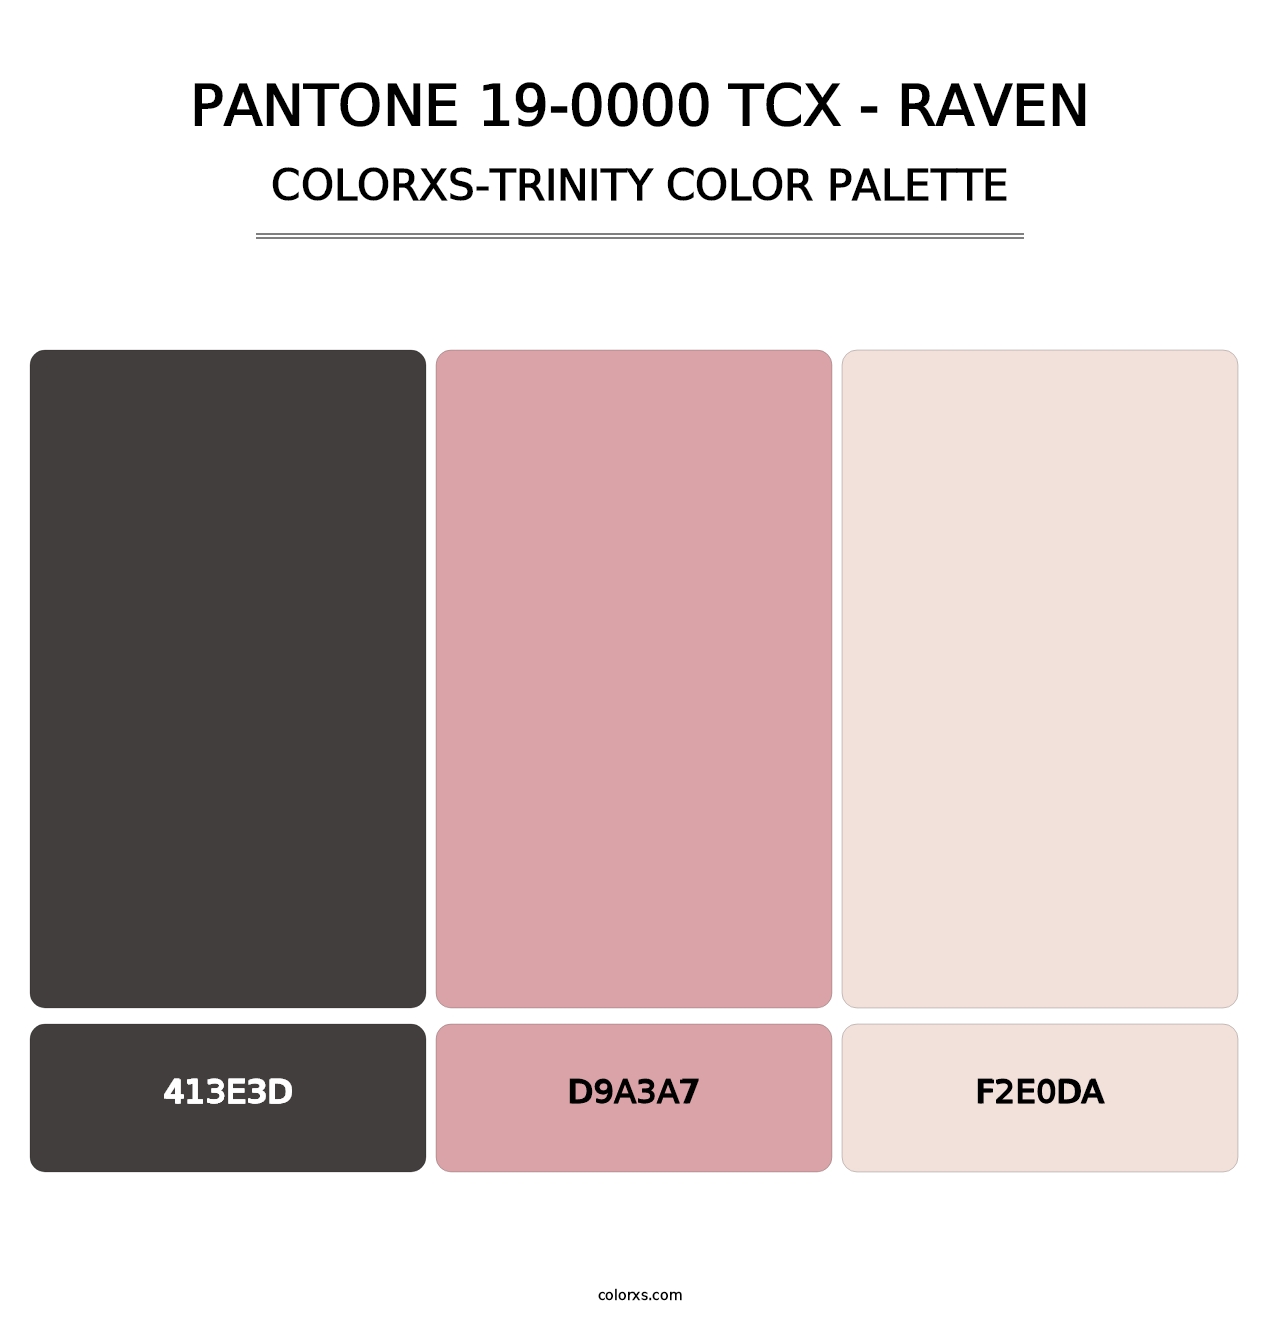 PANTONE 19-0000 TCX - Raven - Colorxs Trinity Palette